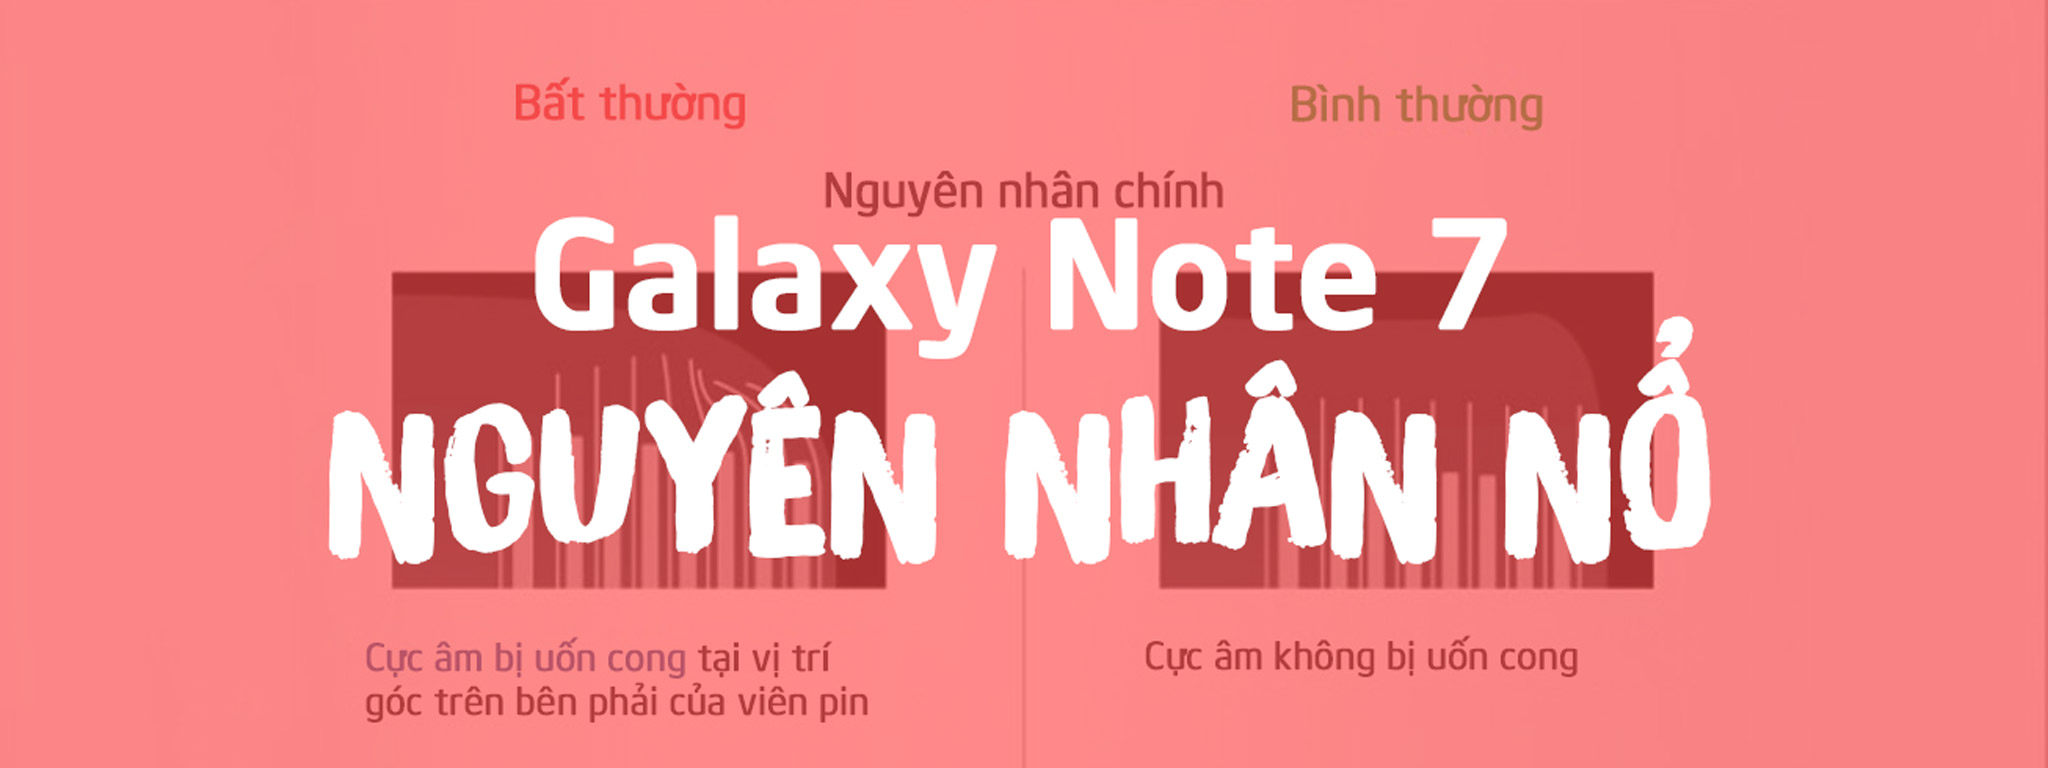 [Infographic] Nguyên nhân pin Galaxy Note 7 bị nổ